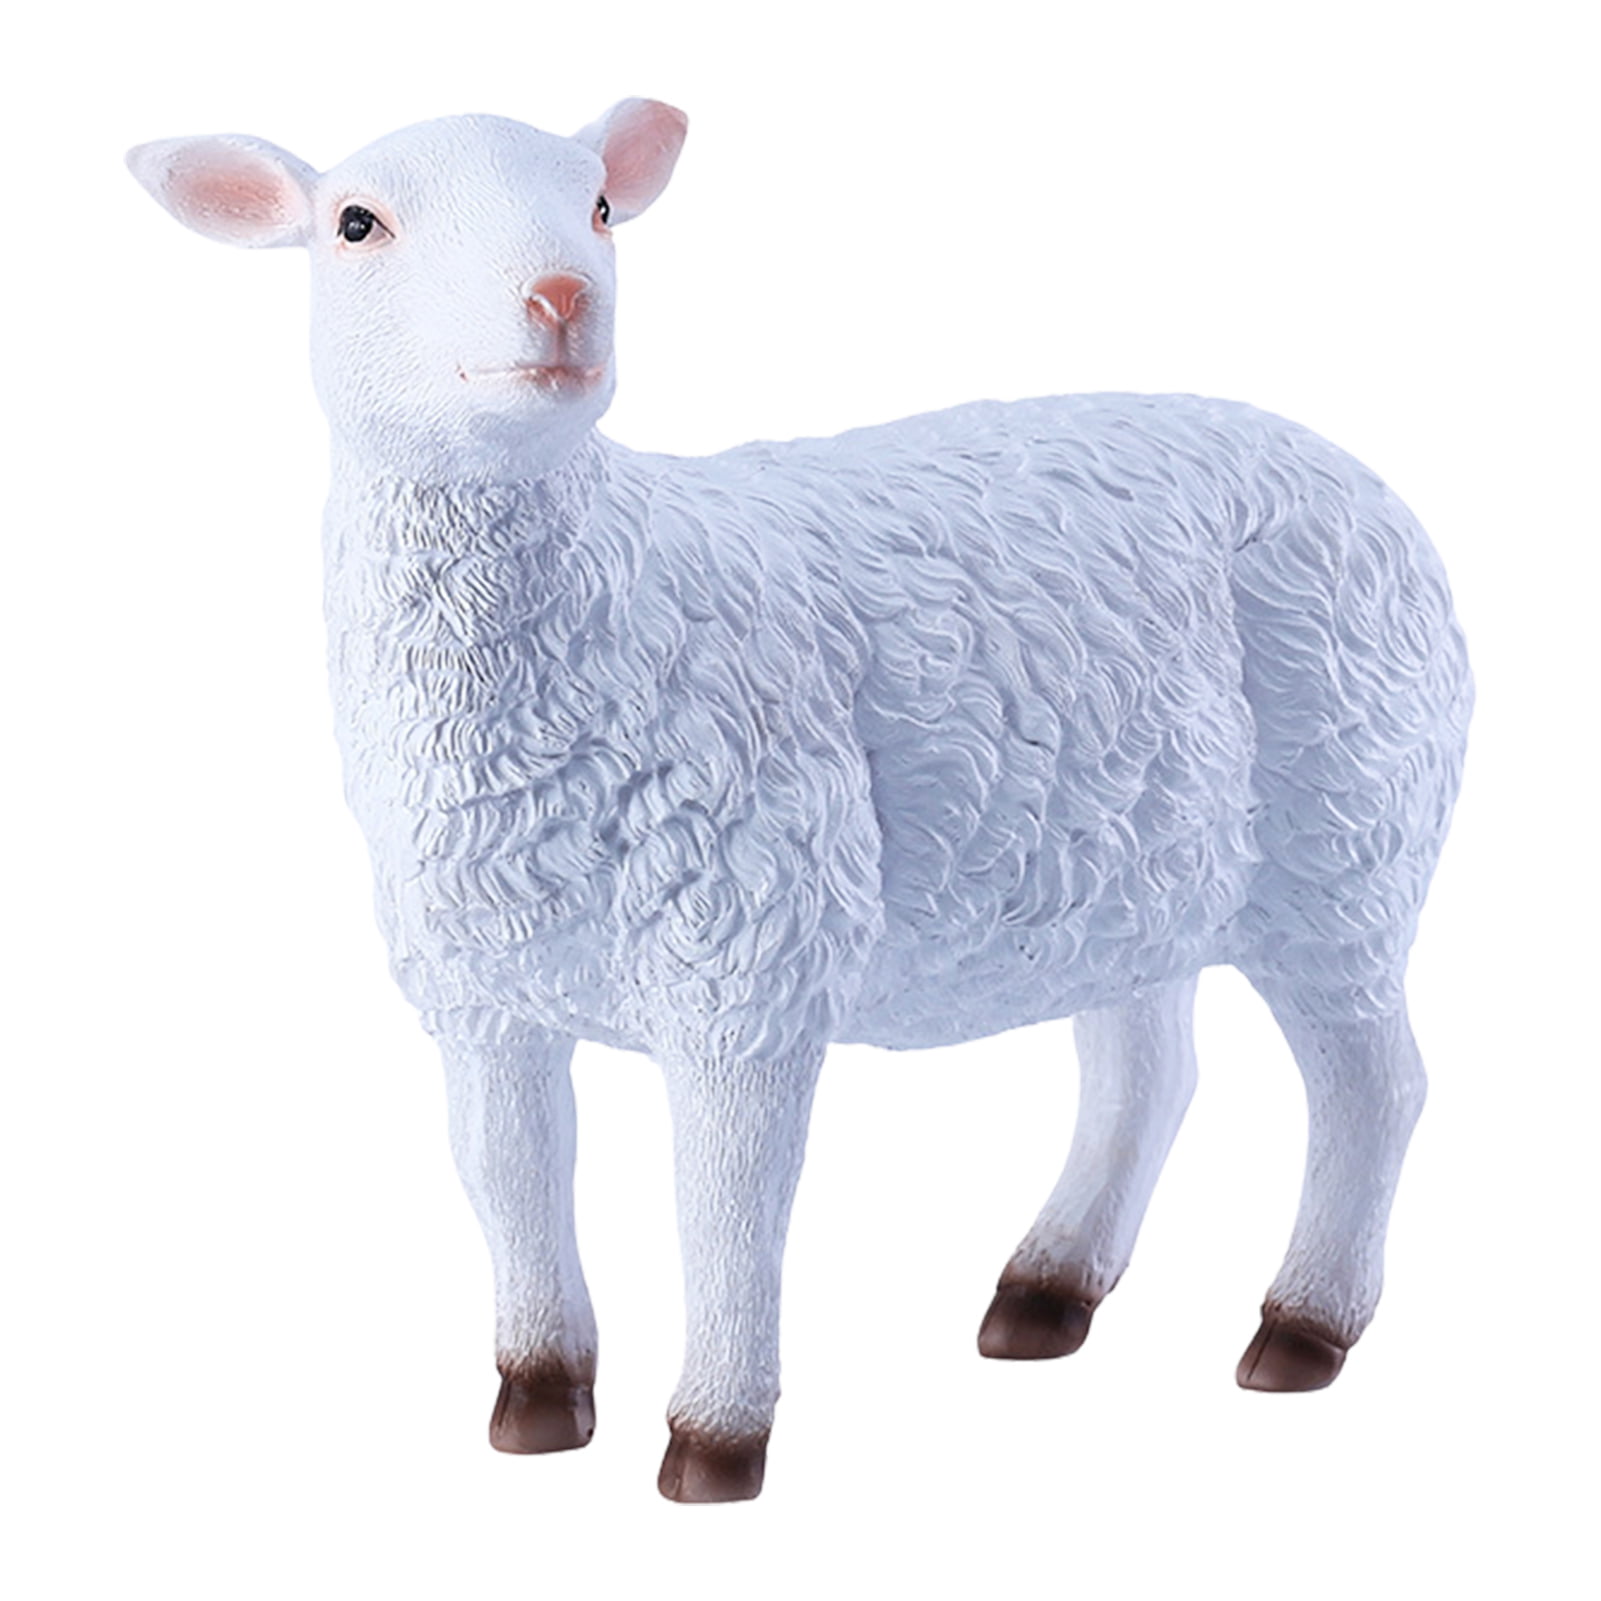 Details about   Sheep Sculpture Garden Statue Large Ornament Farmhouse Animal Figure Lamb Lawn 